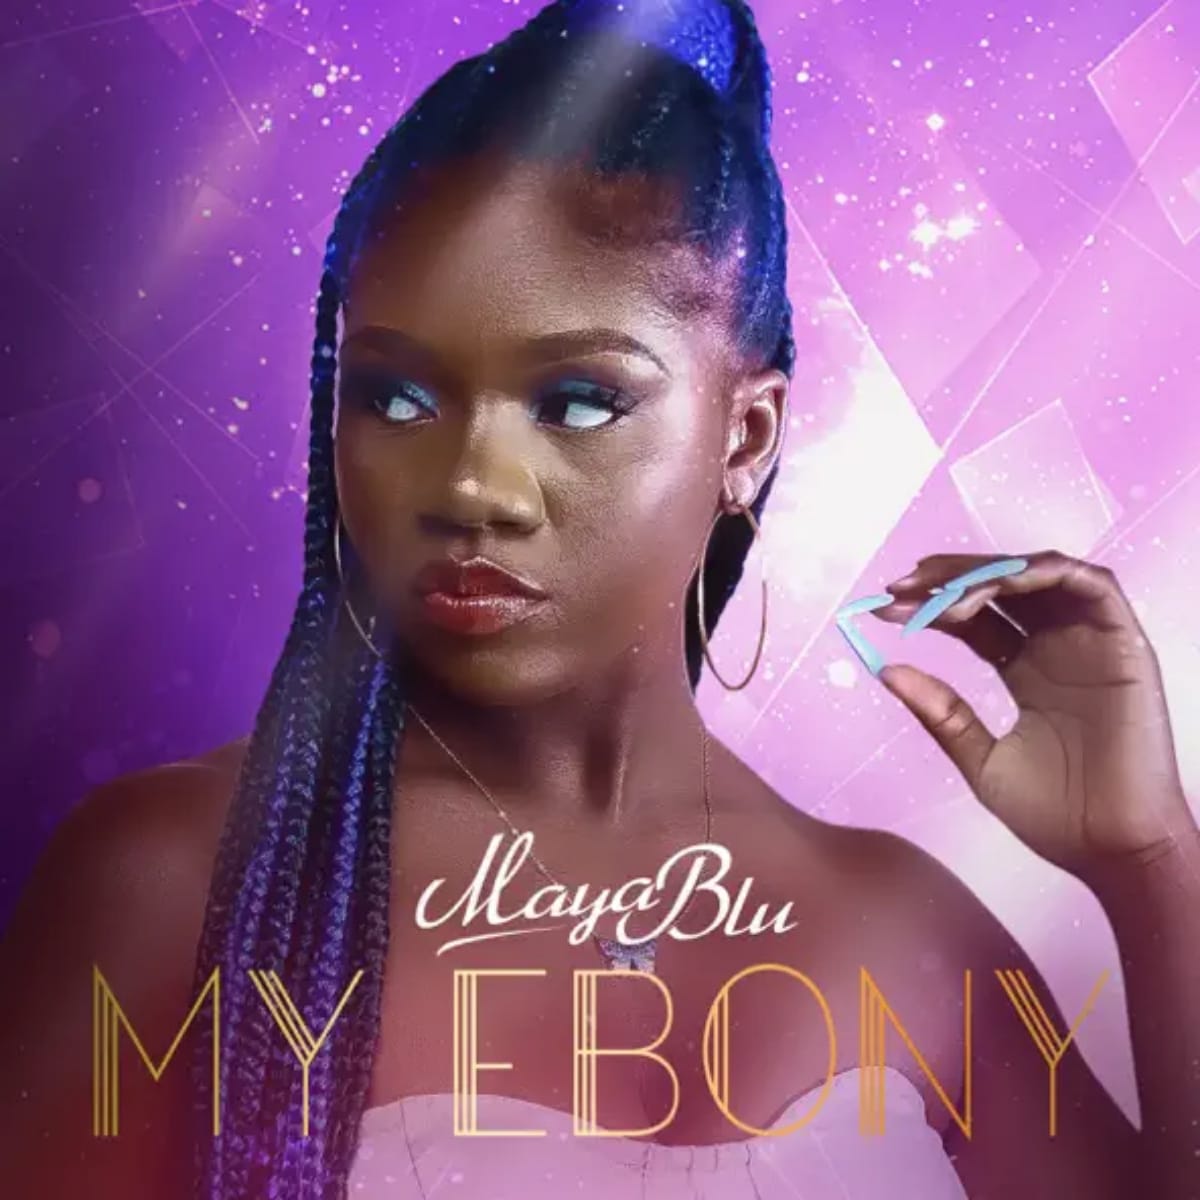 Maya Blu - My Ebony